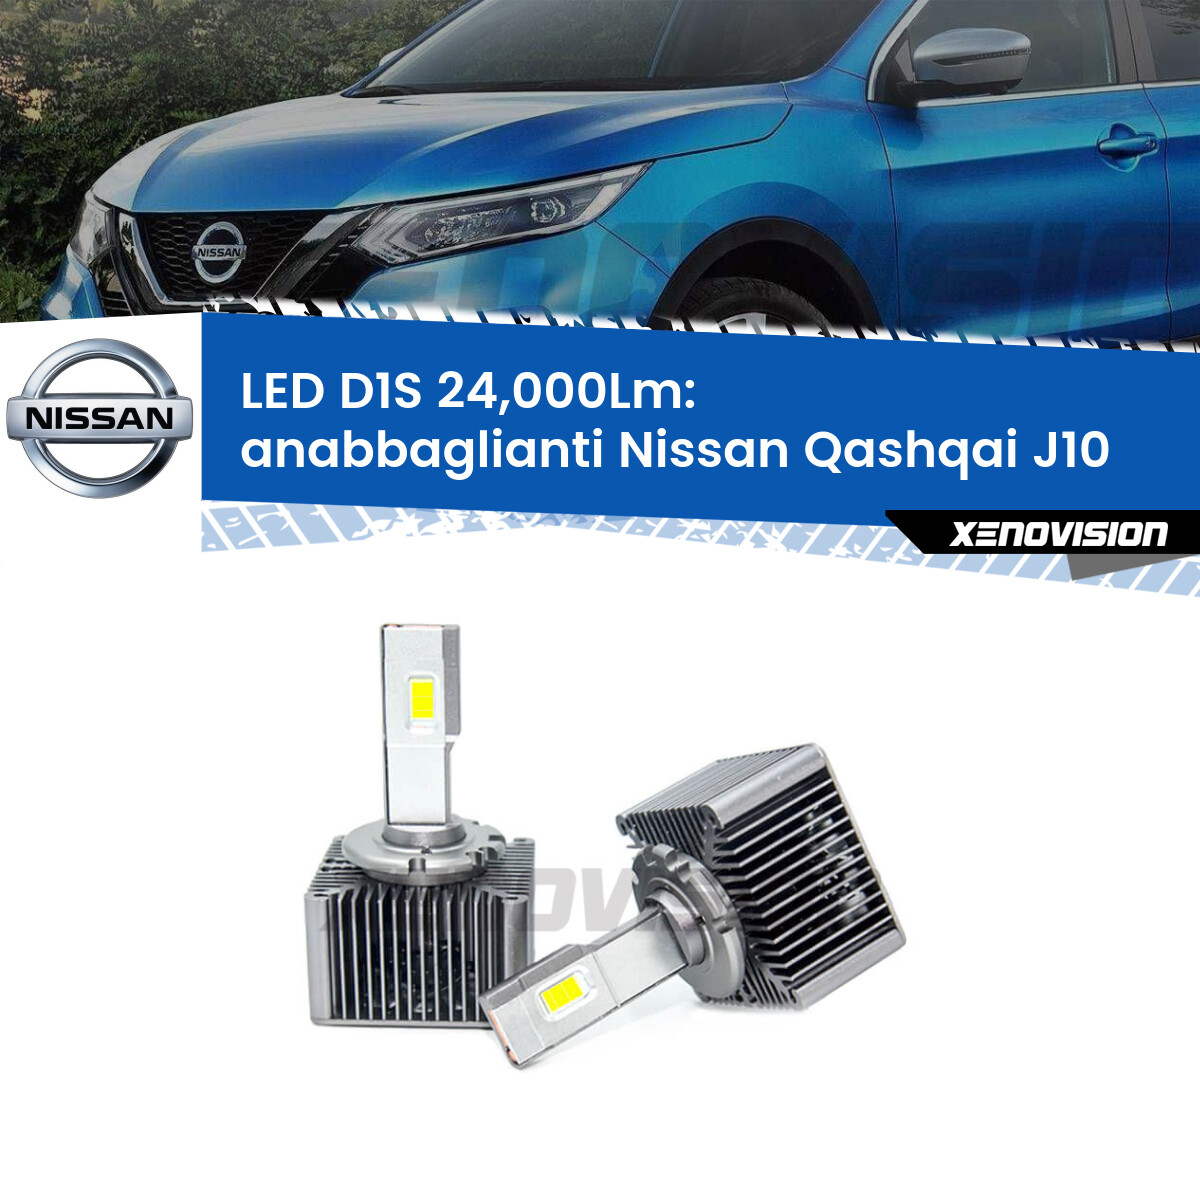 Anabbaglianti LED D1S 24,000Lm per Nissan Qashqai J10 2010 - 2013